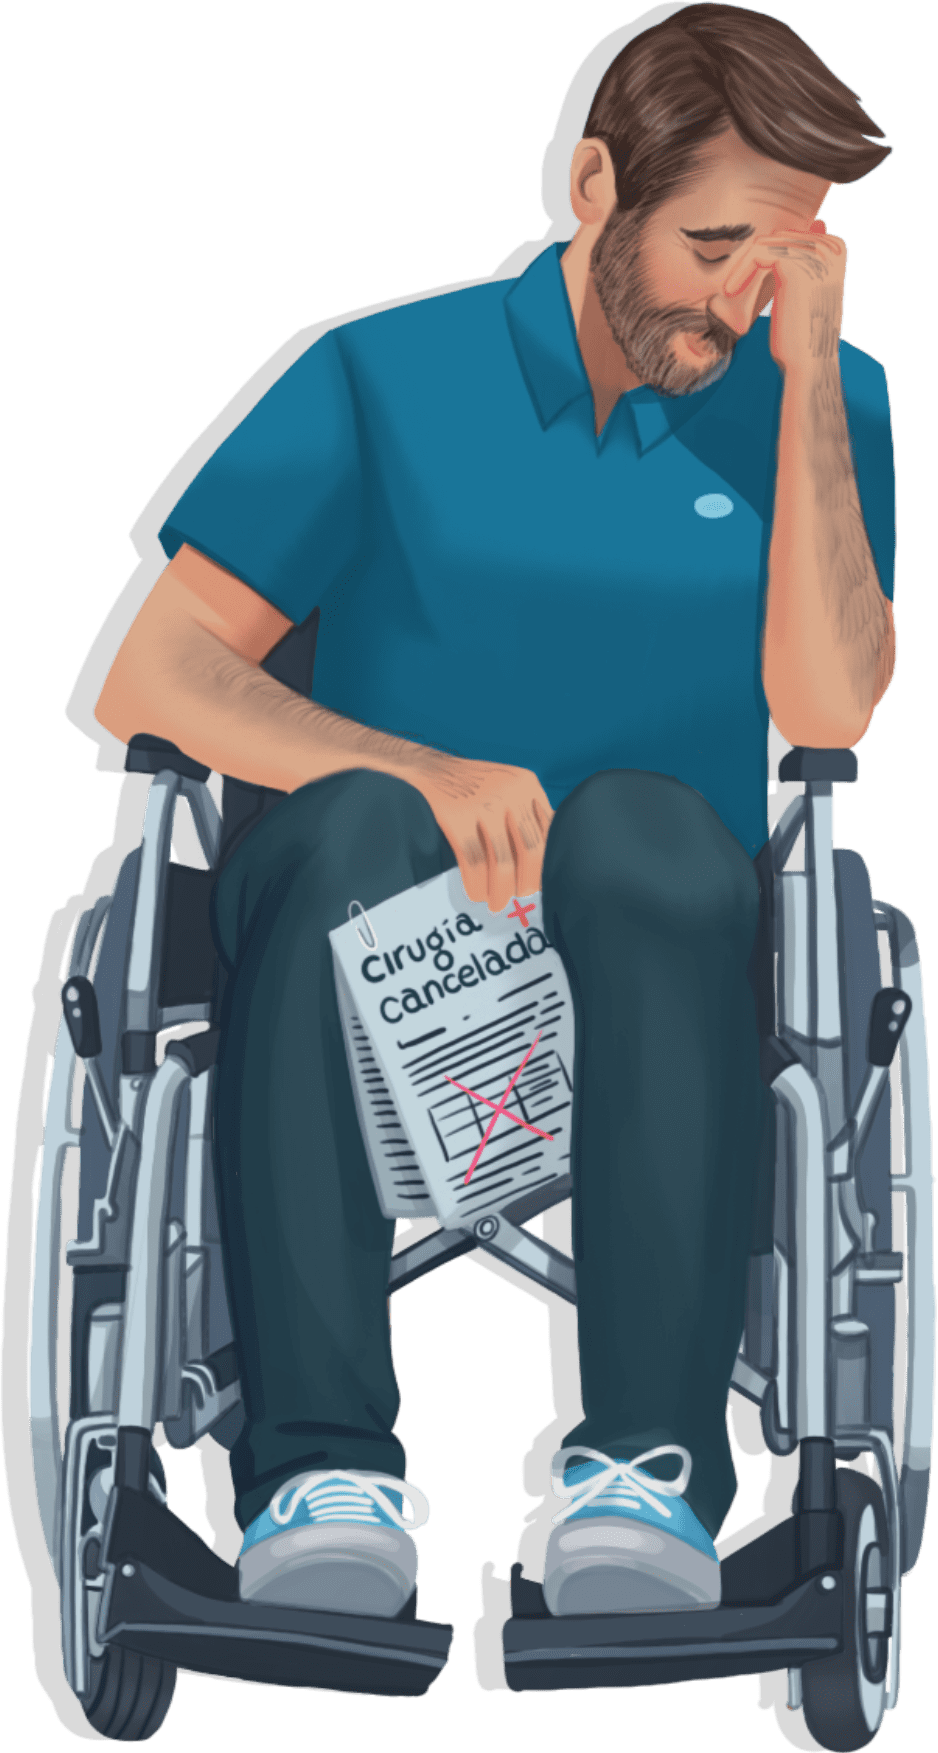 Cancelan consultas en personas con discapacidad 